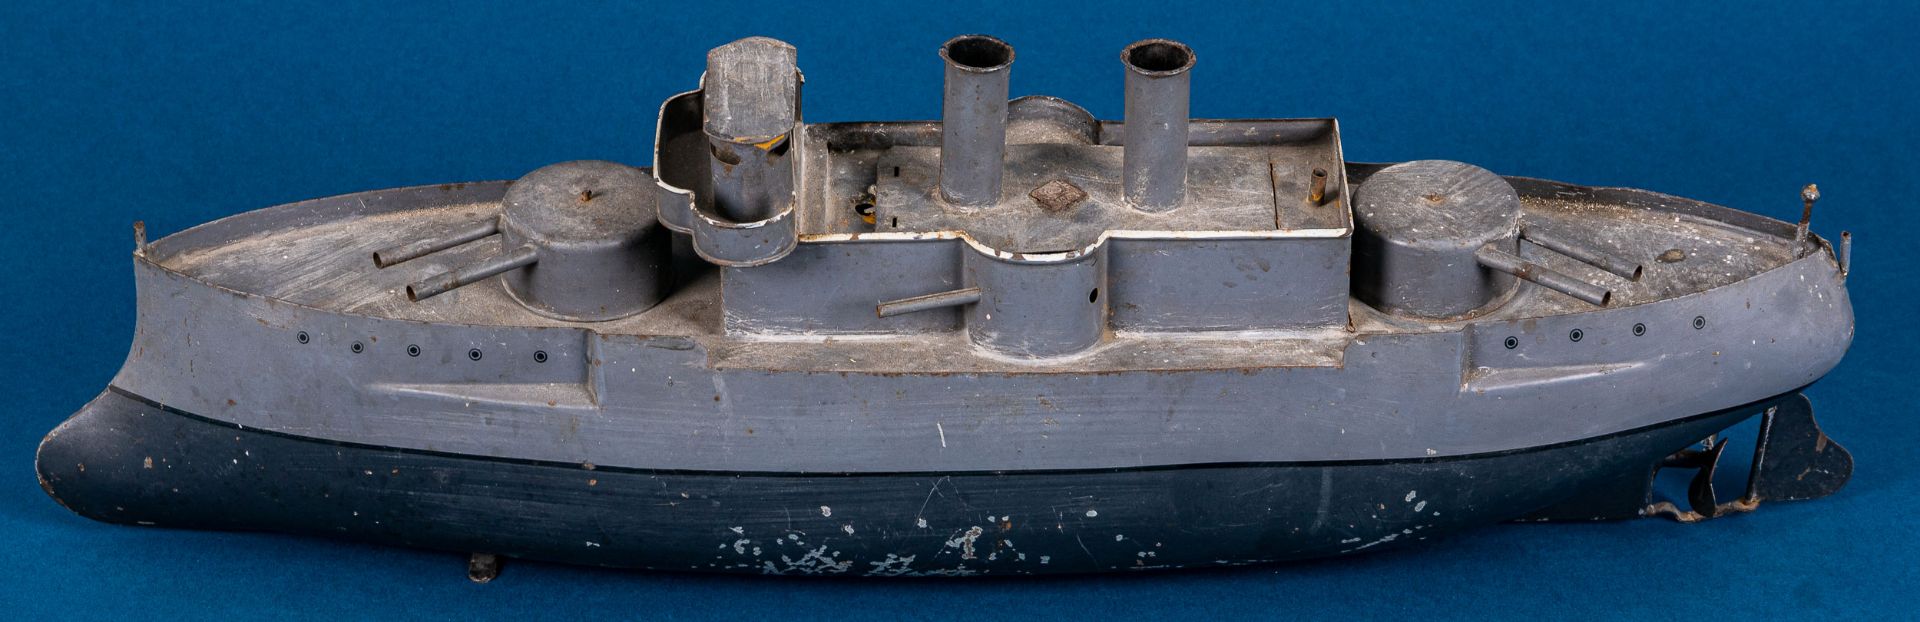 Antikes Blechspielzeug, Kreuzer - Kriegsschiff der Gebr. Bing - Nürnberg um 191